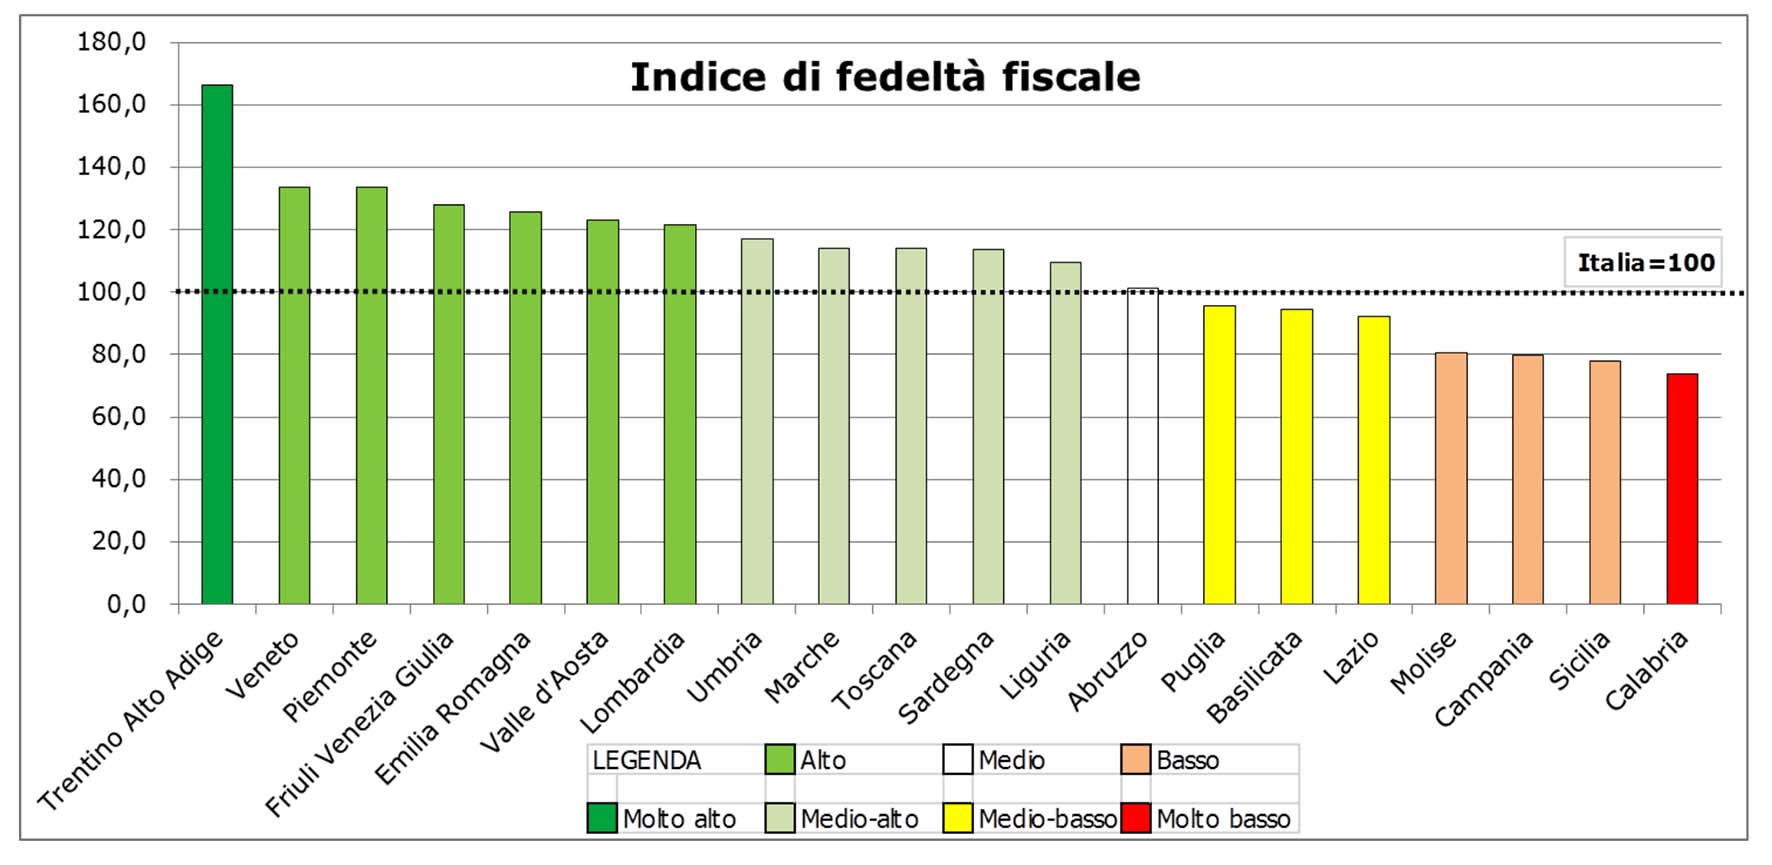 Cgia indice fedeltà fiscale per regioni 2015